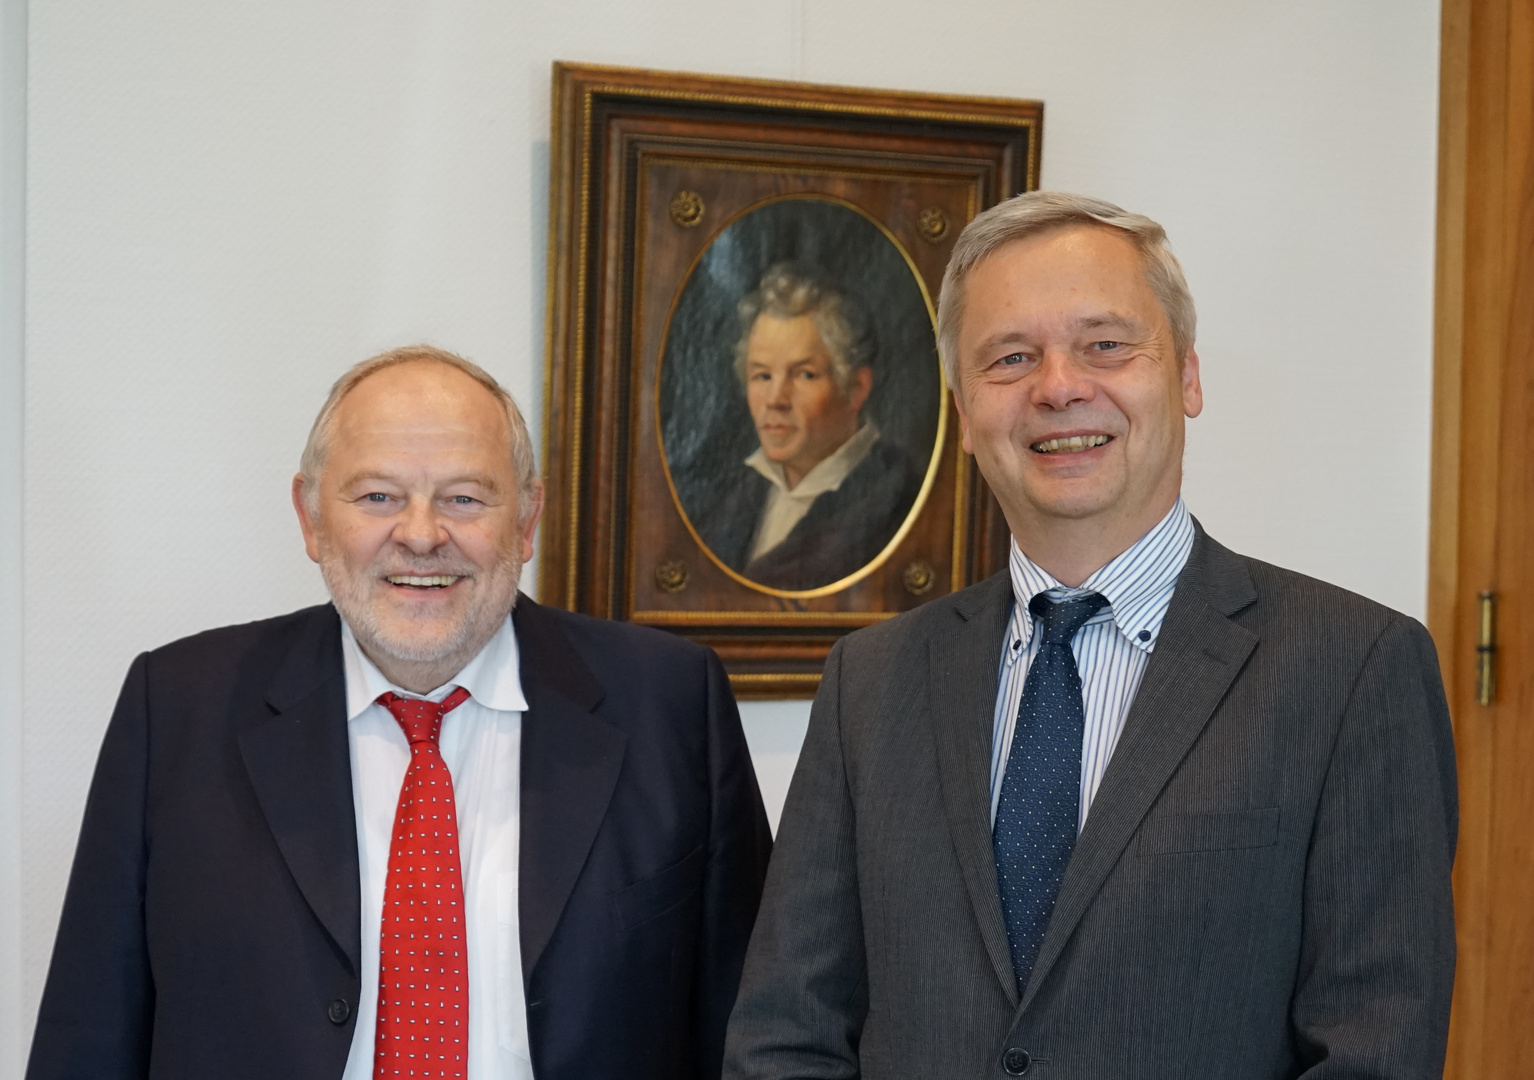 Verabschiedung durch den Präsidenten der TU Berlin, Prof. Thomsen